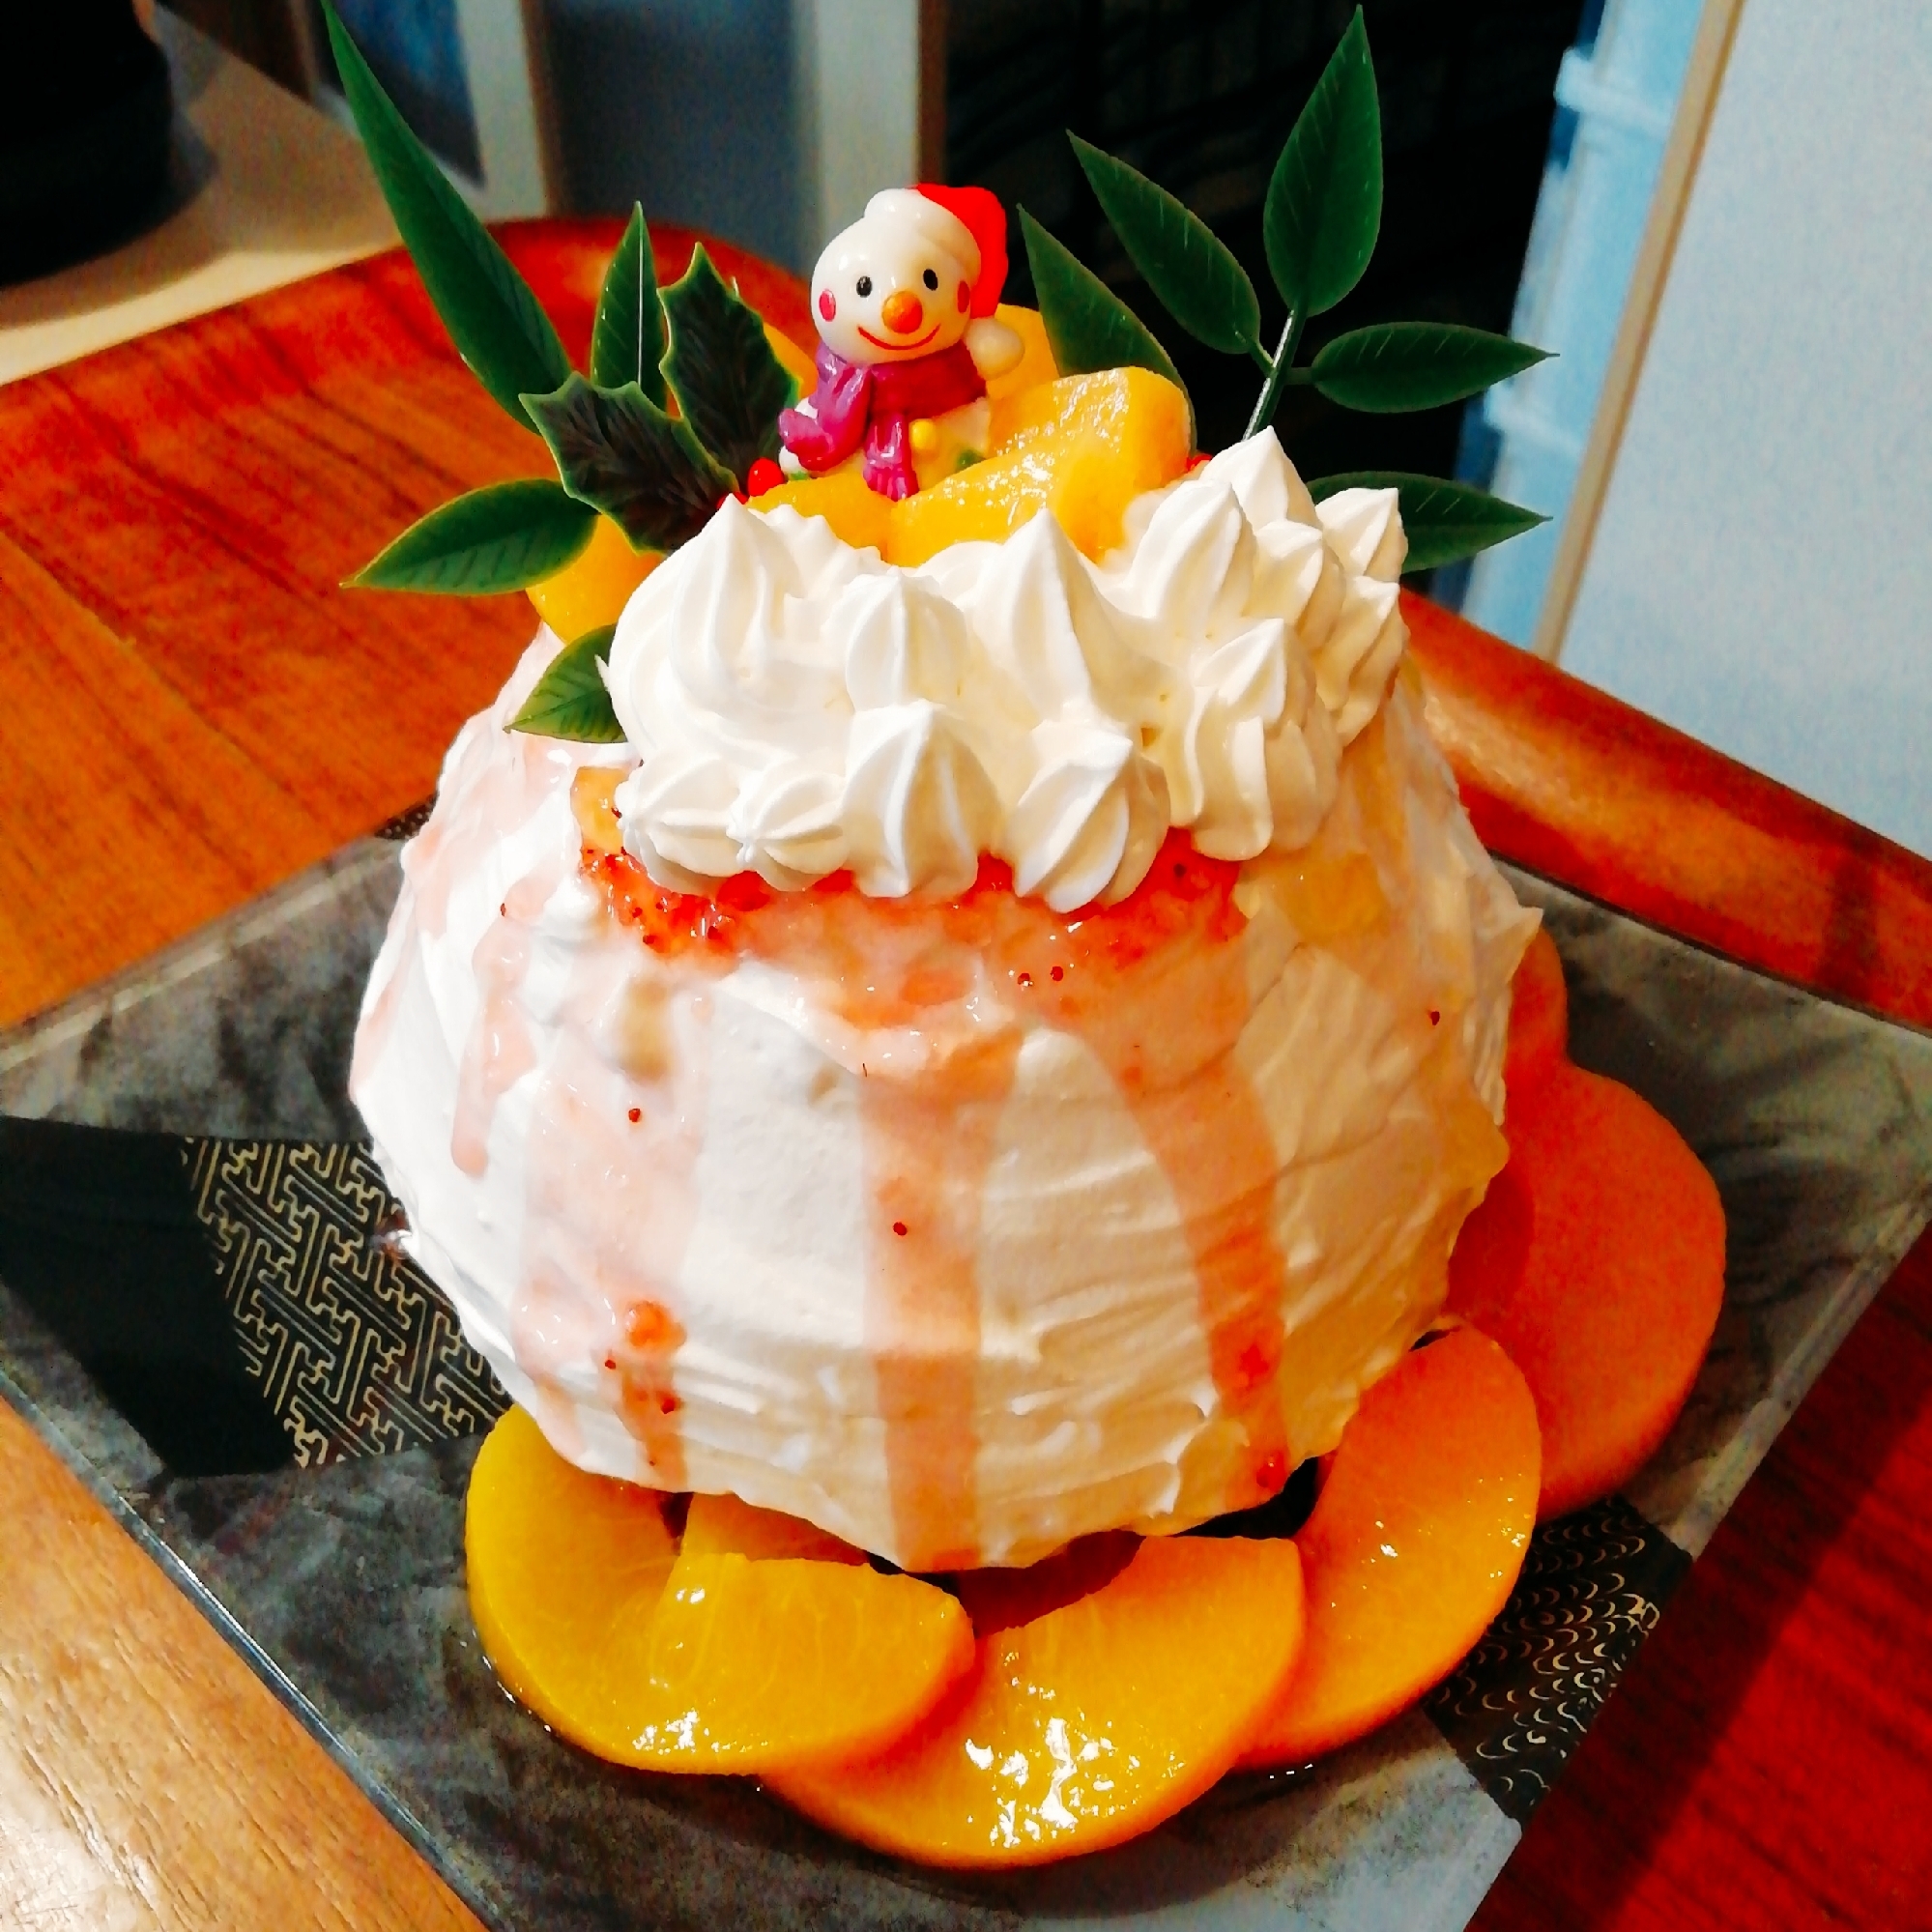 ジャムで簡単 ケーキのデコレーション レシピ 作り方 By Boof 楽天レシピ